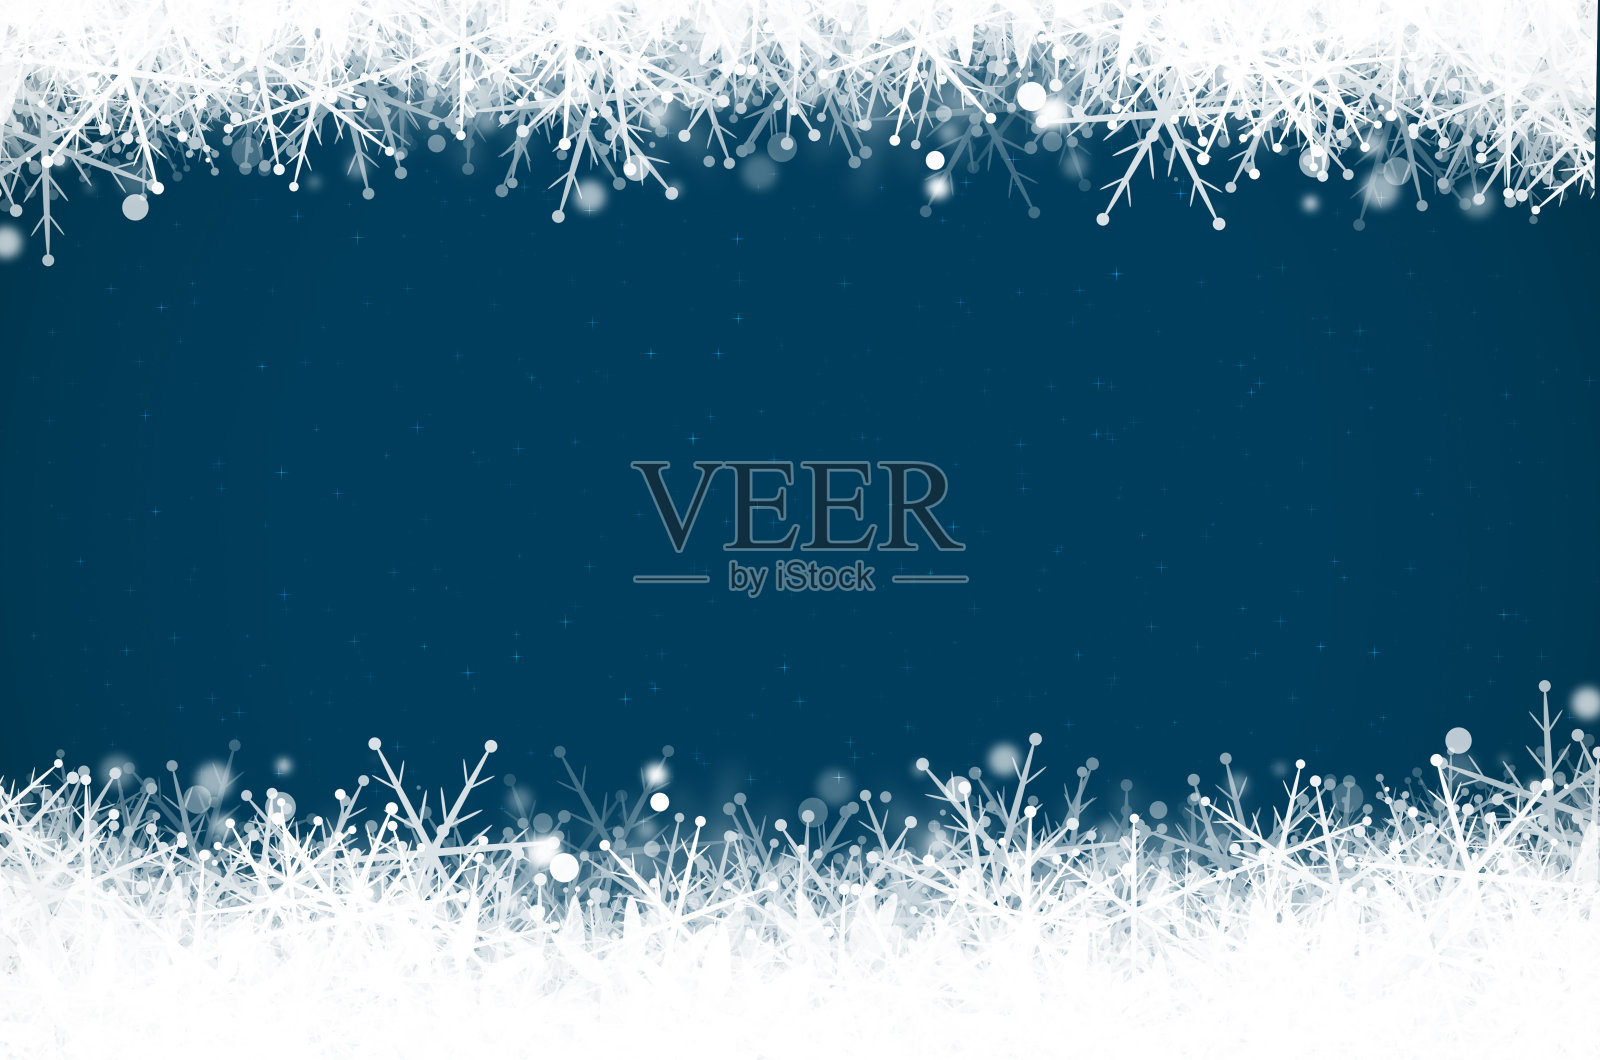 抽象的蓝色圣诞背景。插画图片素材